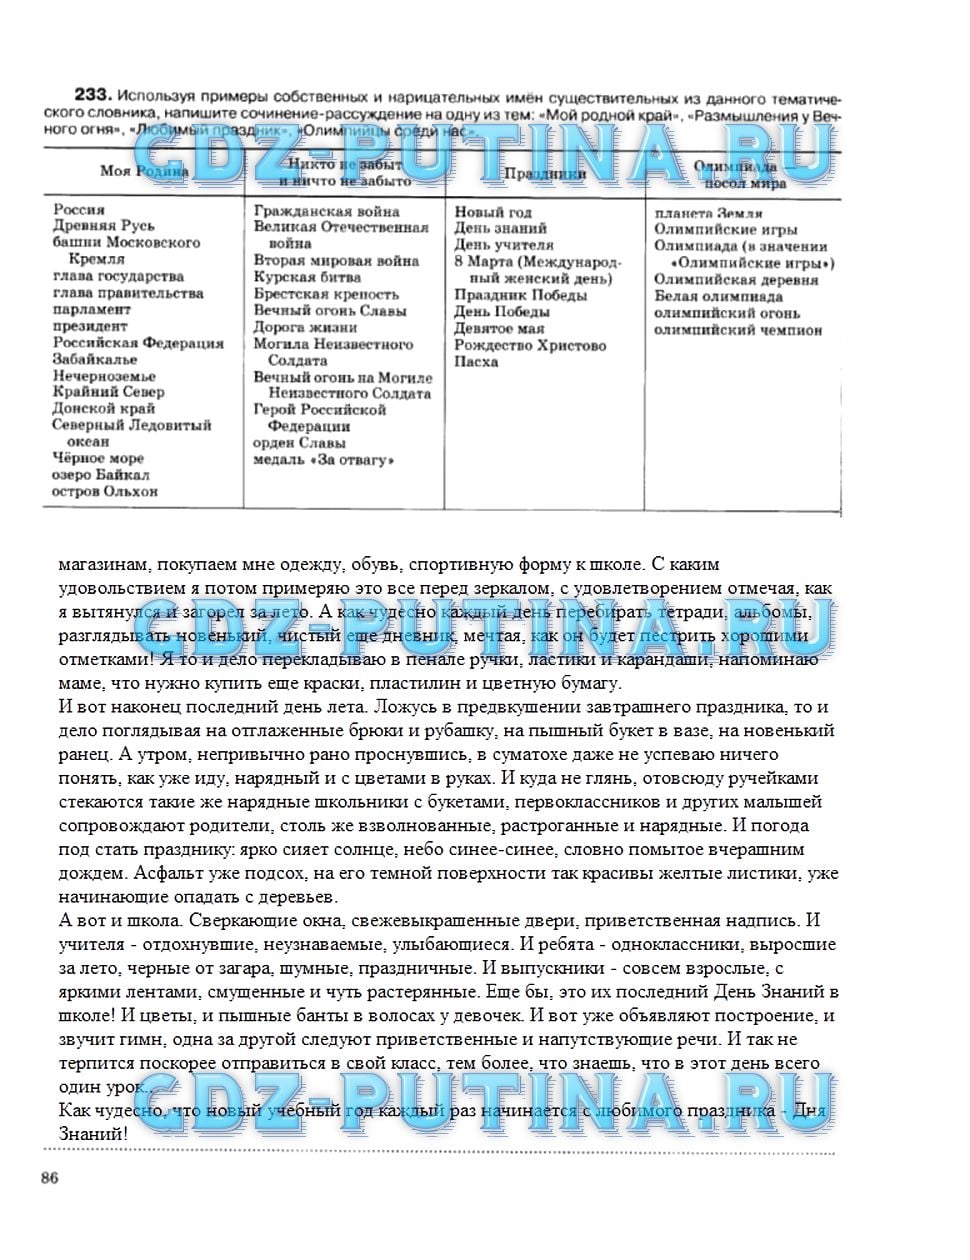 гдз 5 класс рабочая тетрадь страница 86 русский язык Ларионова